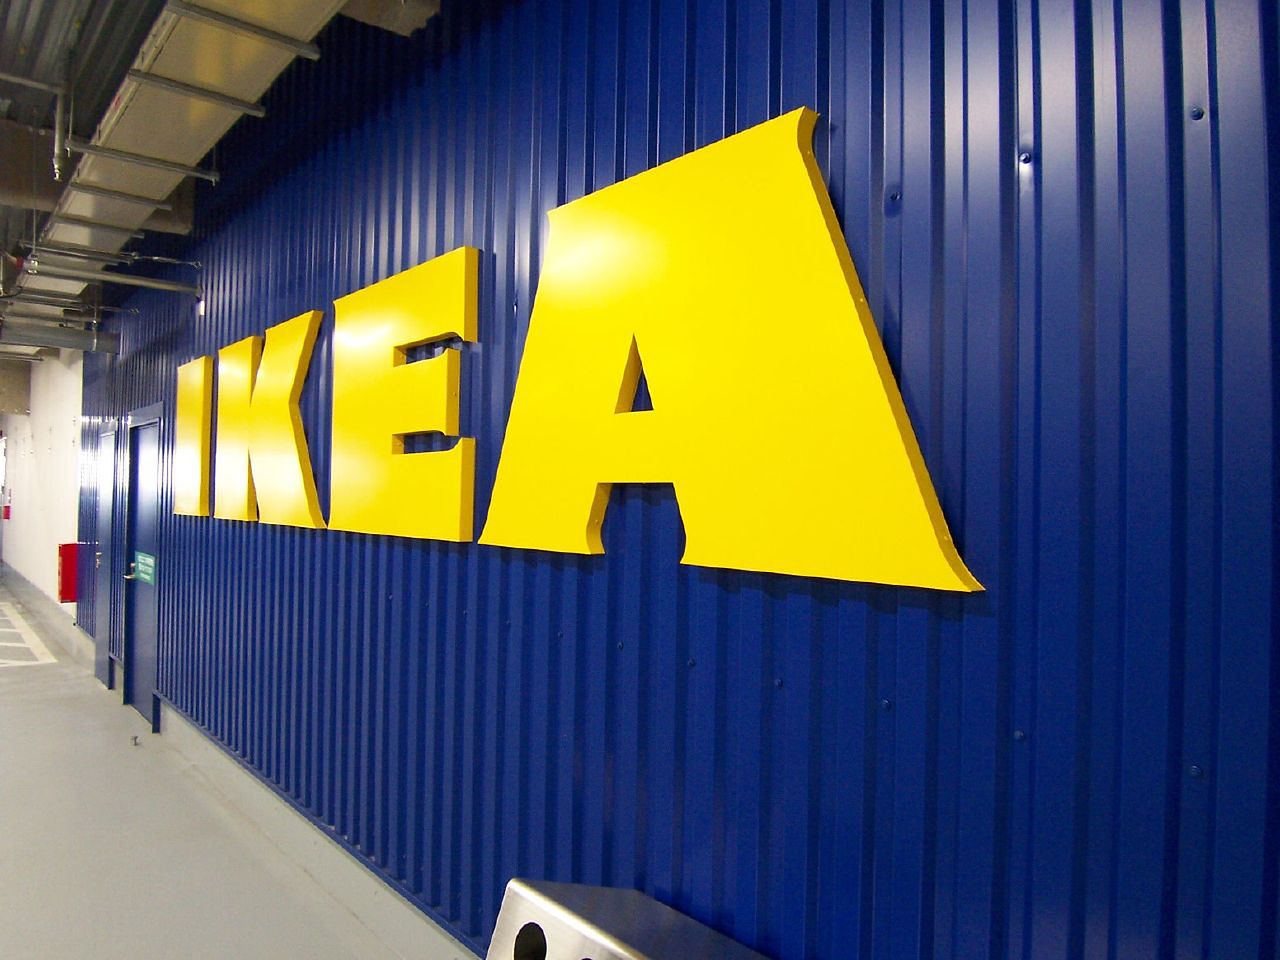 IKEA ma problemy z dostawami. "Zdecydowaliśmy się na podjęcie nadzwyczajnych kroków"